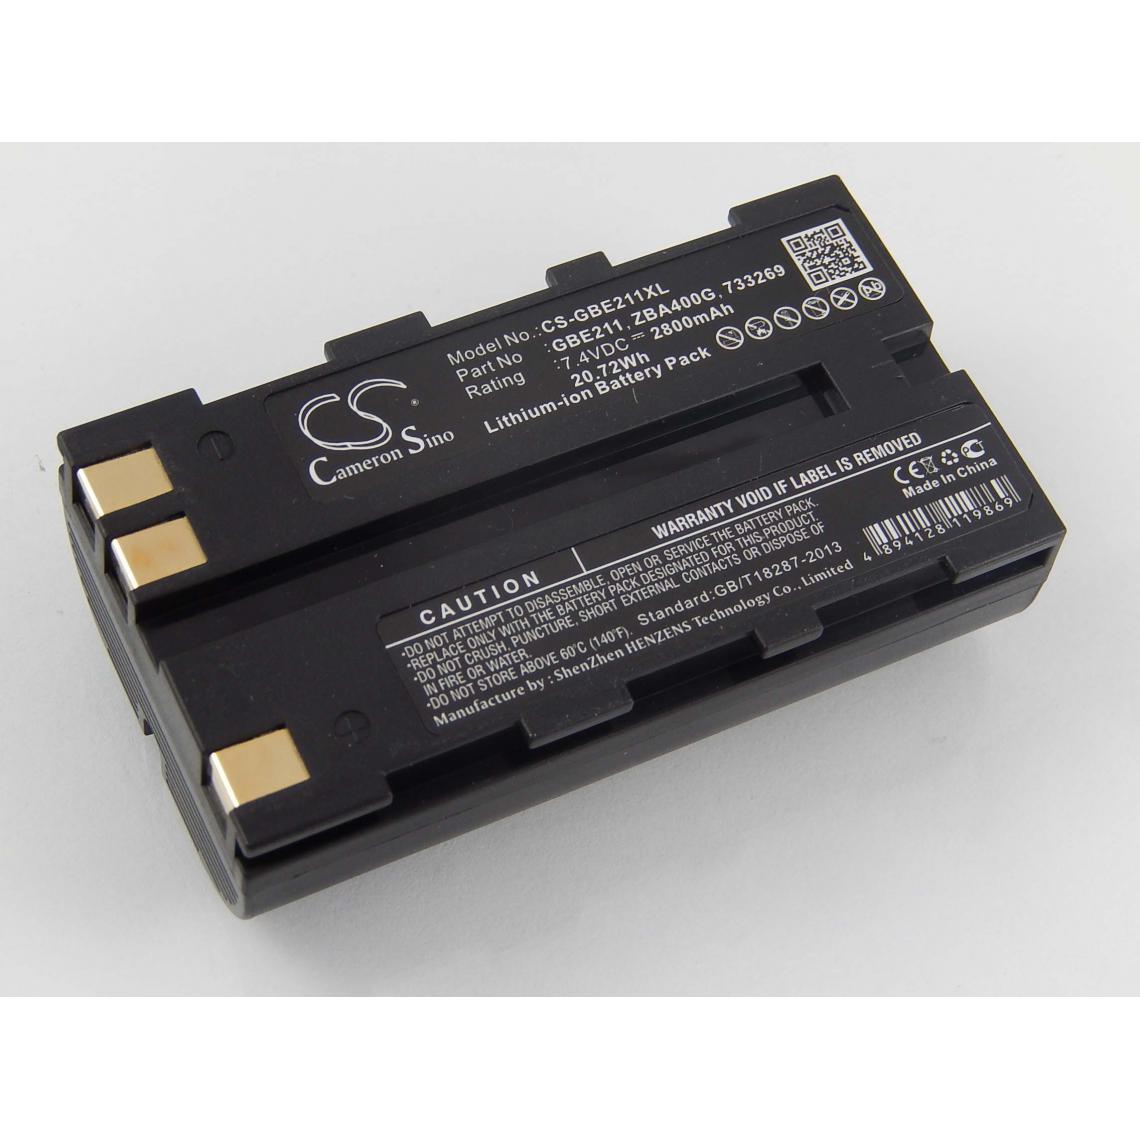 Vhbw - vhbw Batterie compatible avec Leica SR530 GPS, Stonex R6+ dispositif de mesure laser, outil de mesure (2800mAh, 7,4V, Li-ion) - Piles rechargeables